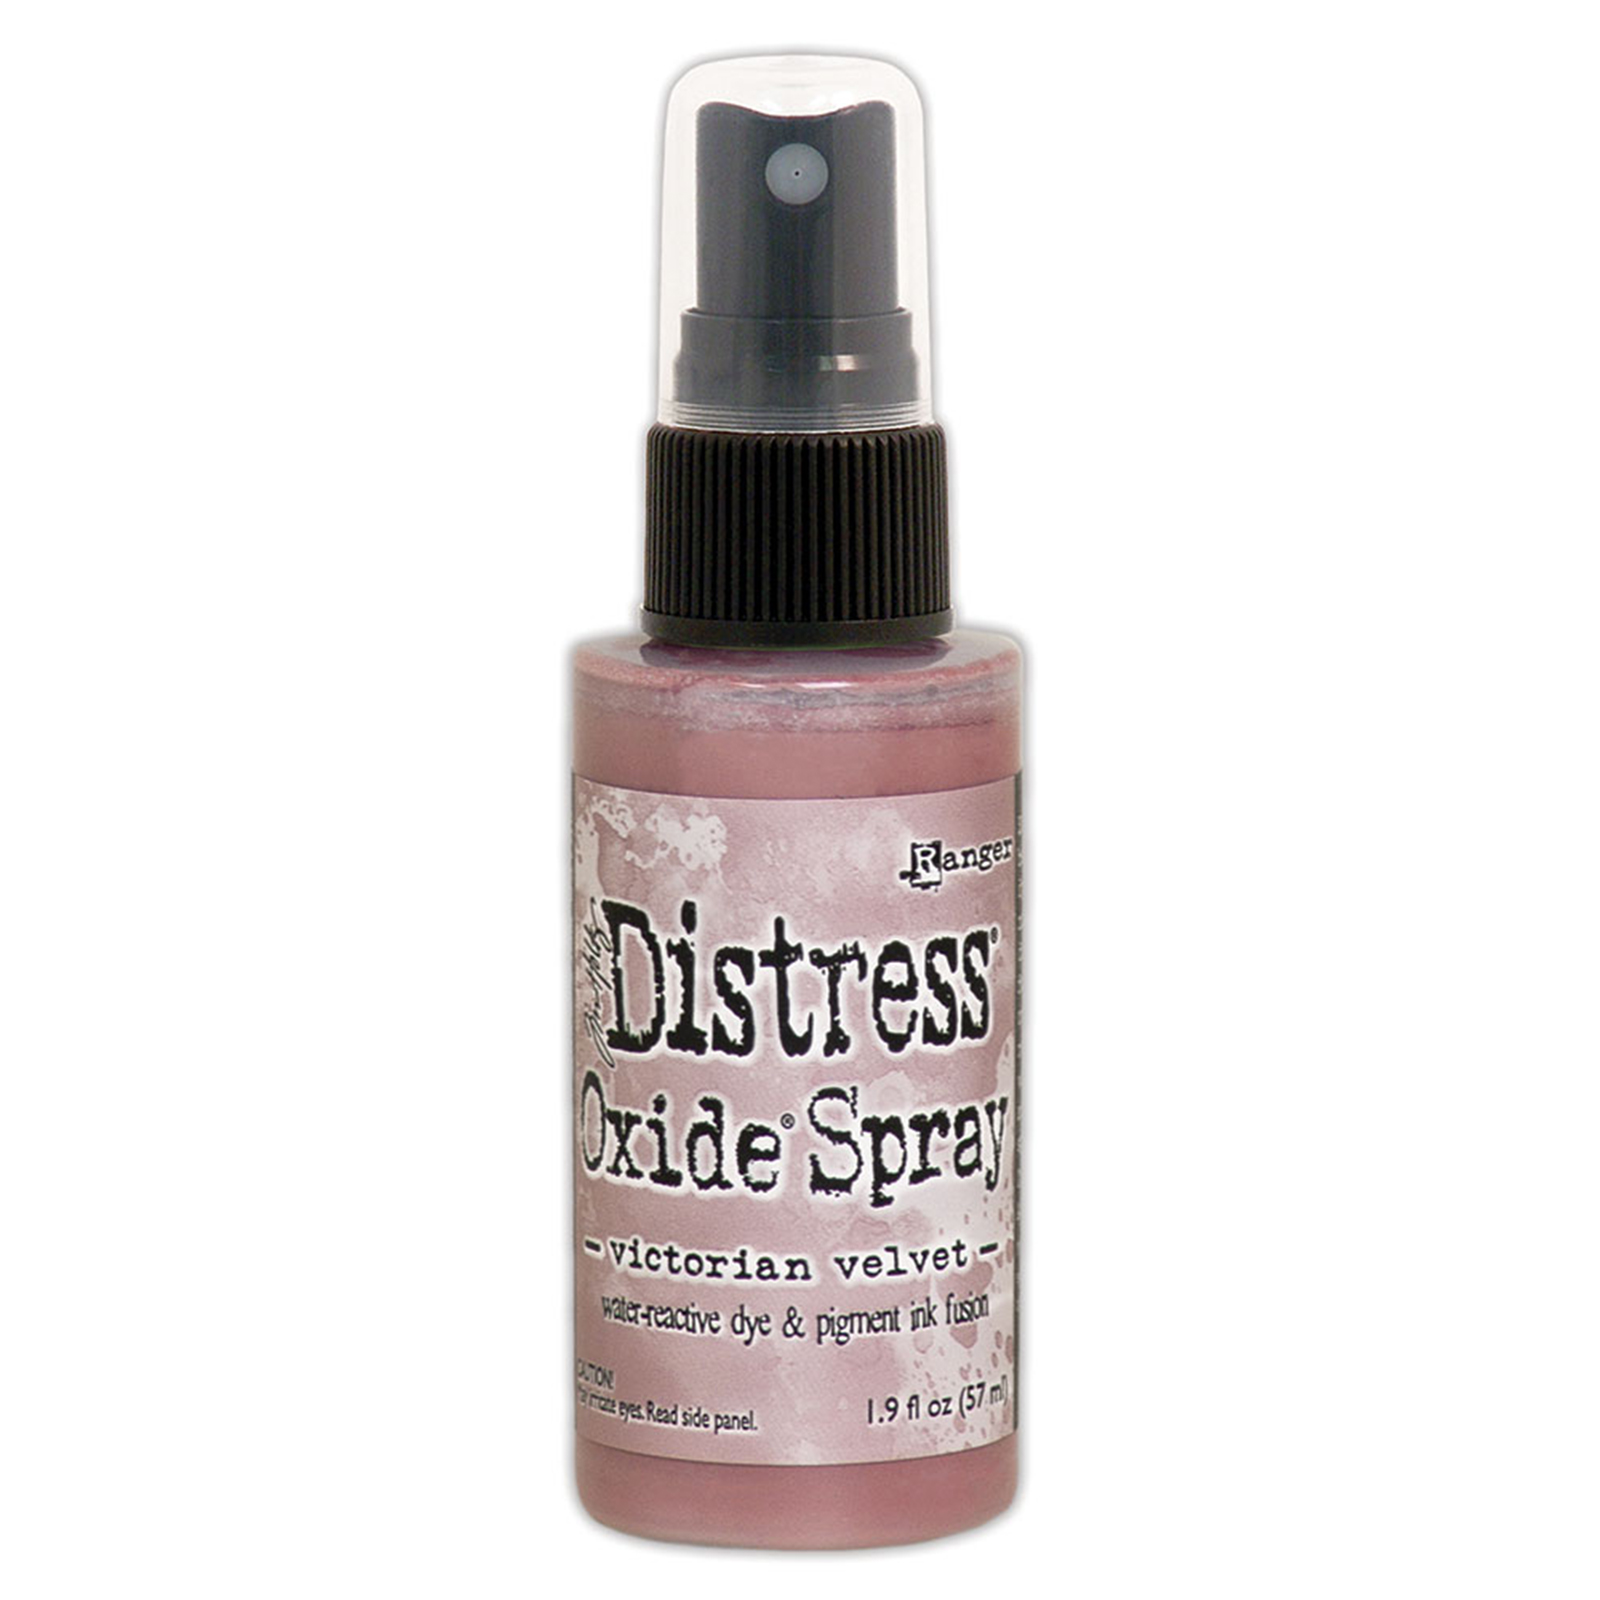 Ranger • Distress oxide spray Victorian velvet